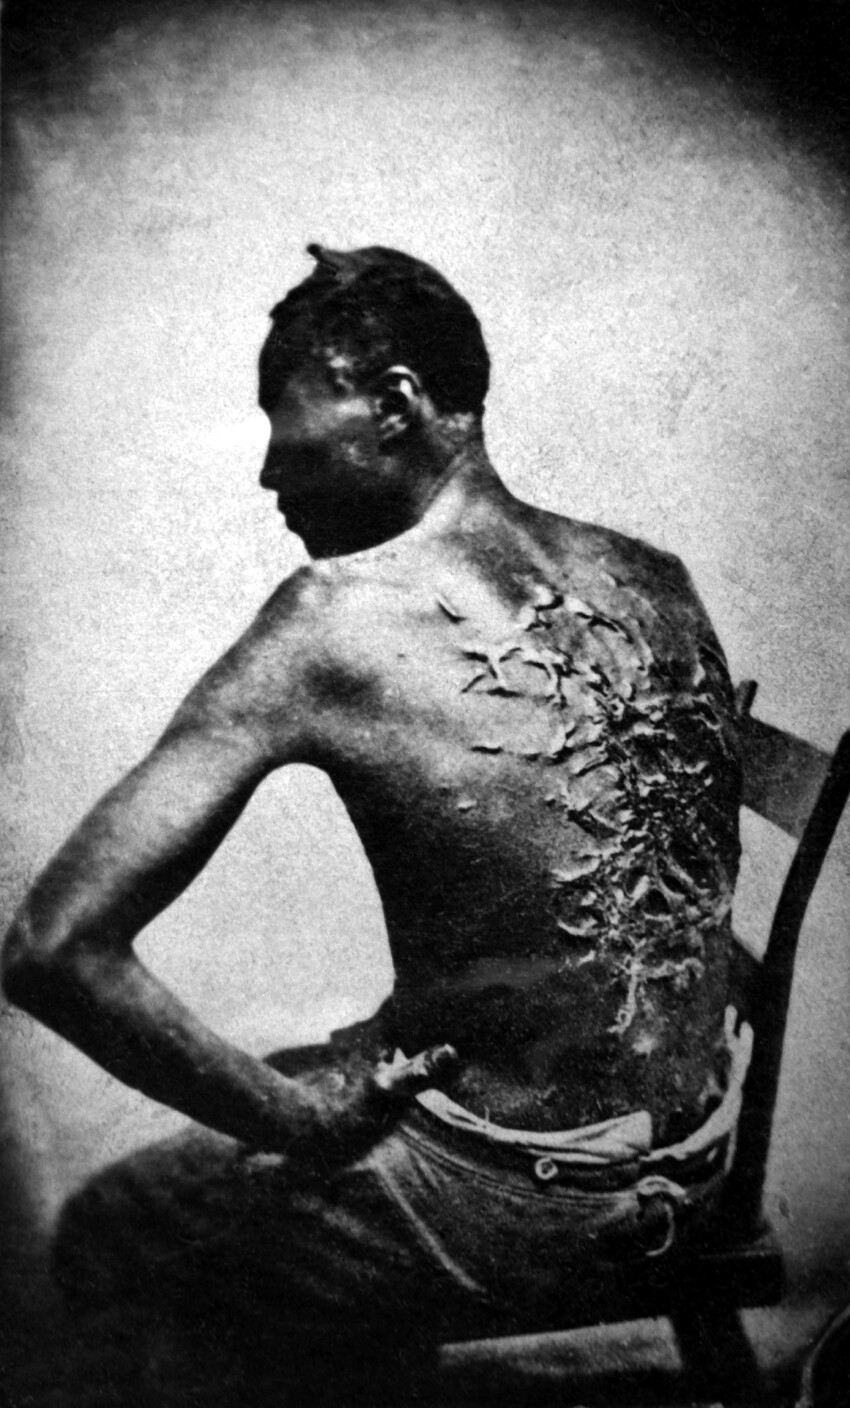 21. Бывший раб показывает свои шрамы от битья, штат Луизиана США, 1863 г.